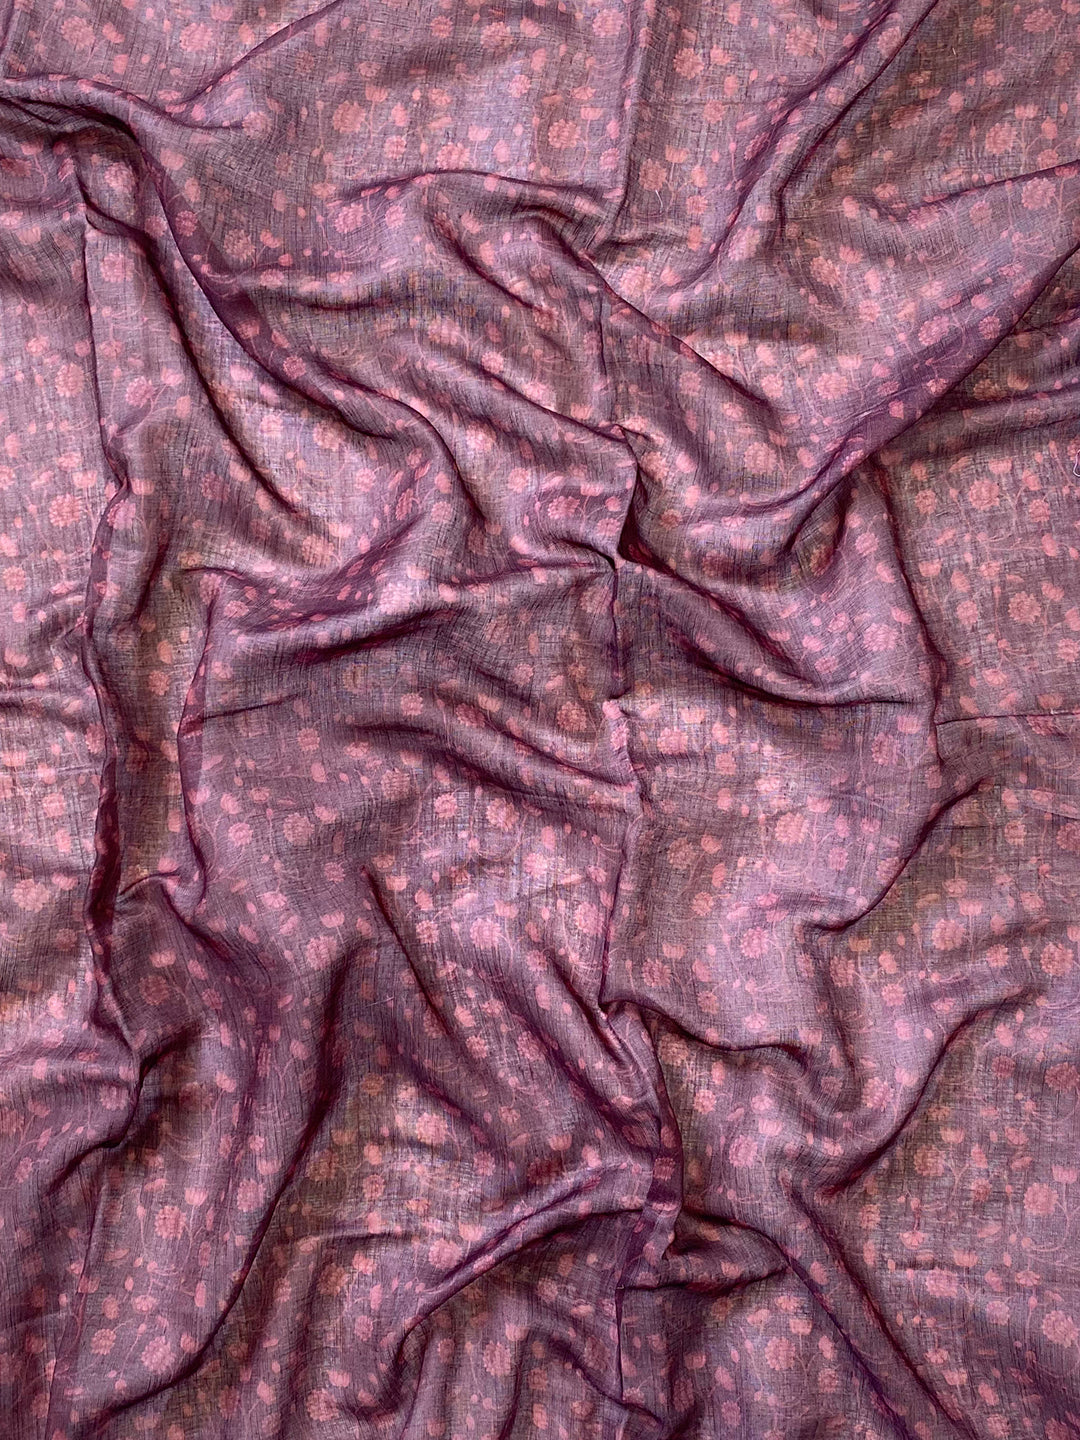 Soft Linen Ombre Pichwai Printed Purple Colour Saree